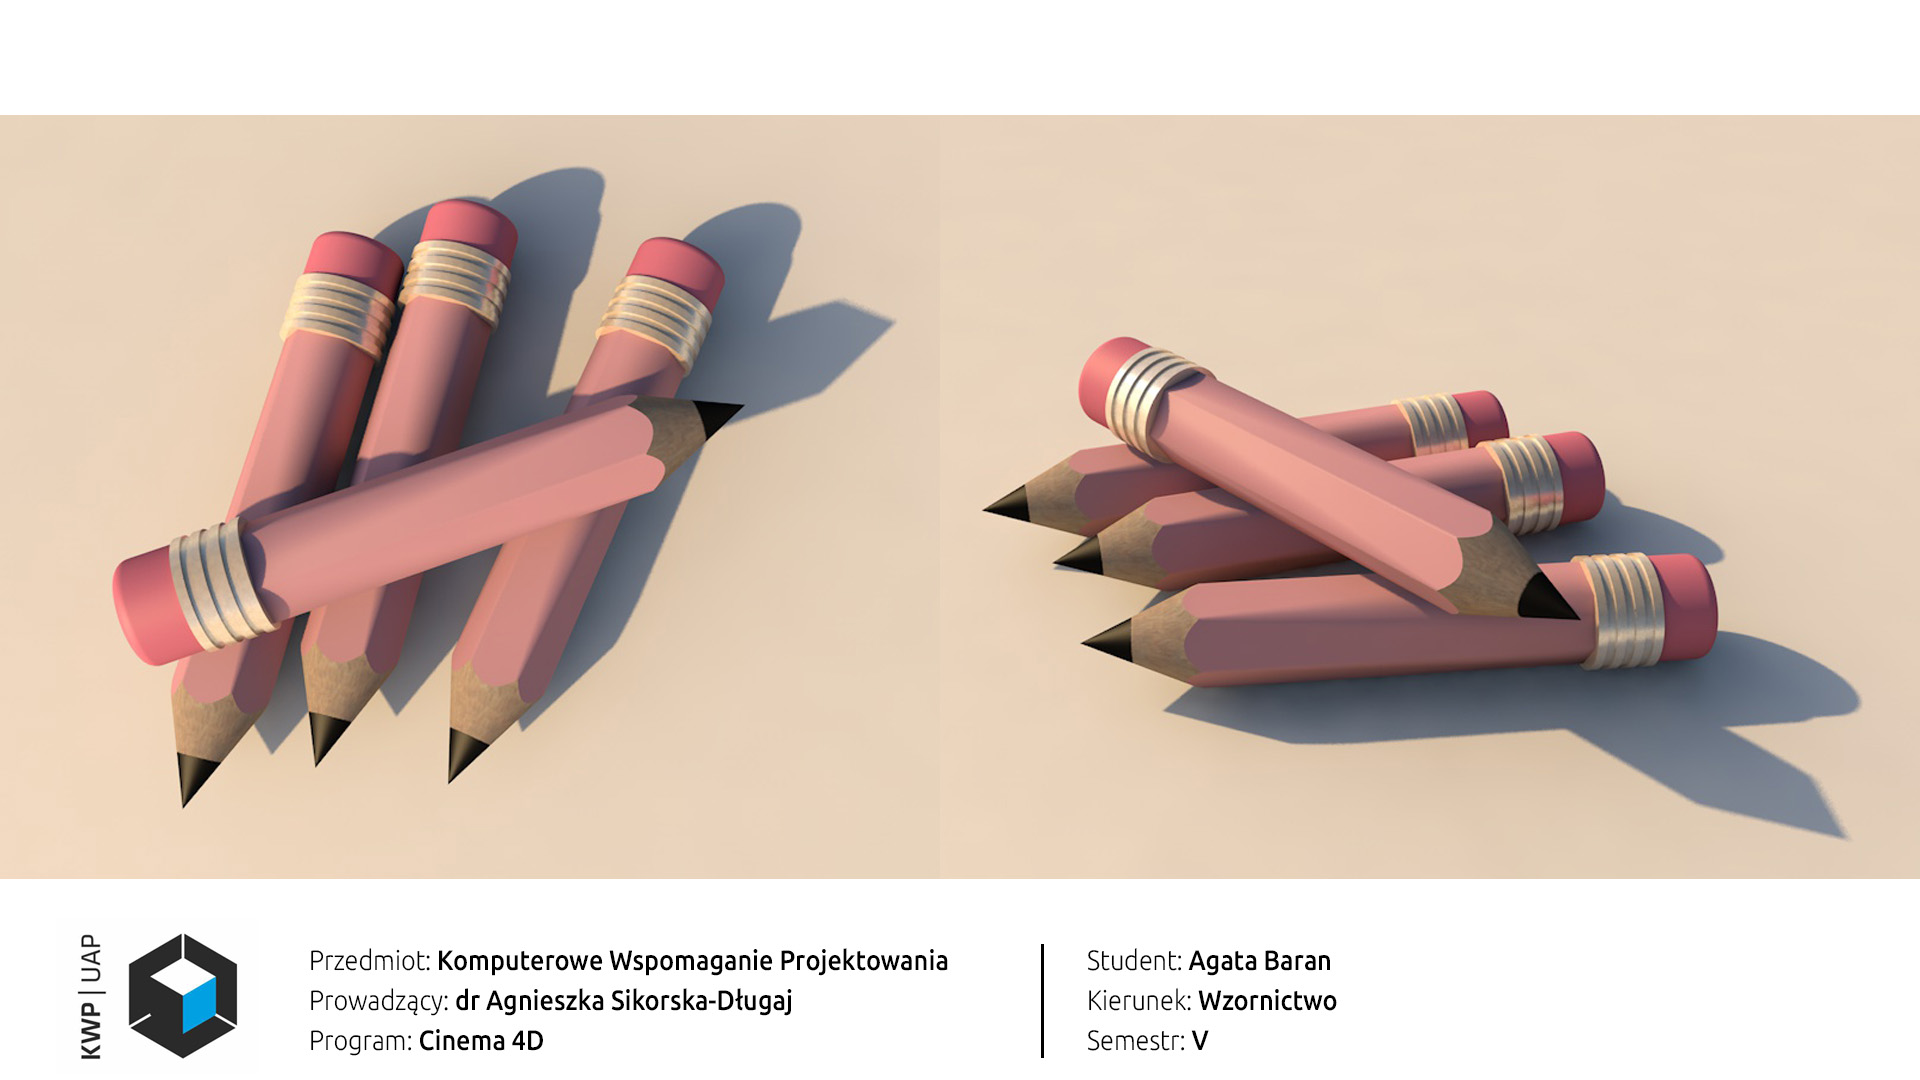 Rendery z programu Cinema 4D. Model czterech różowych ołówków z gumką. Kompozycja zwarta, ołówki leżą ułożone jedno przy drugim na płaskiej powierzchni. Tło różowo-pastelowe.